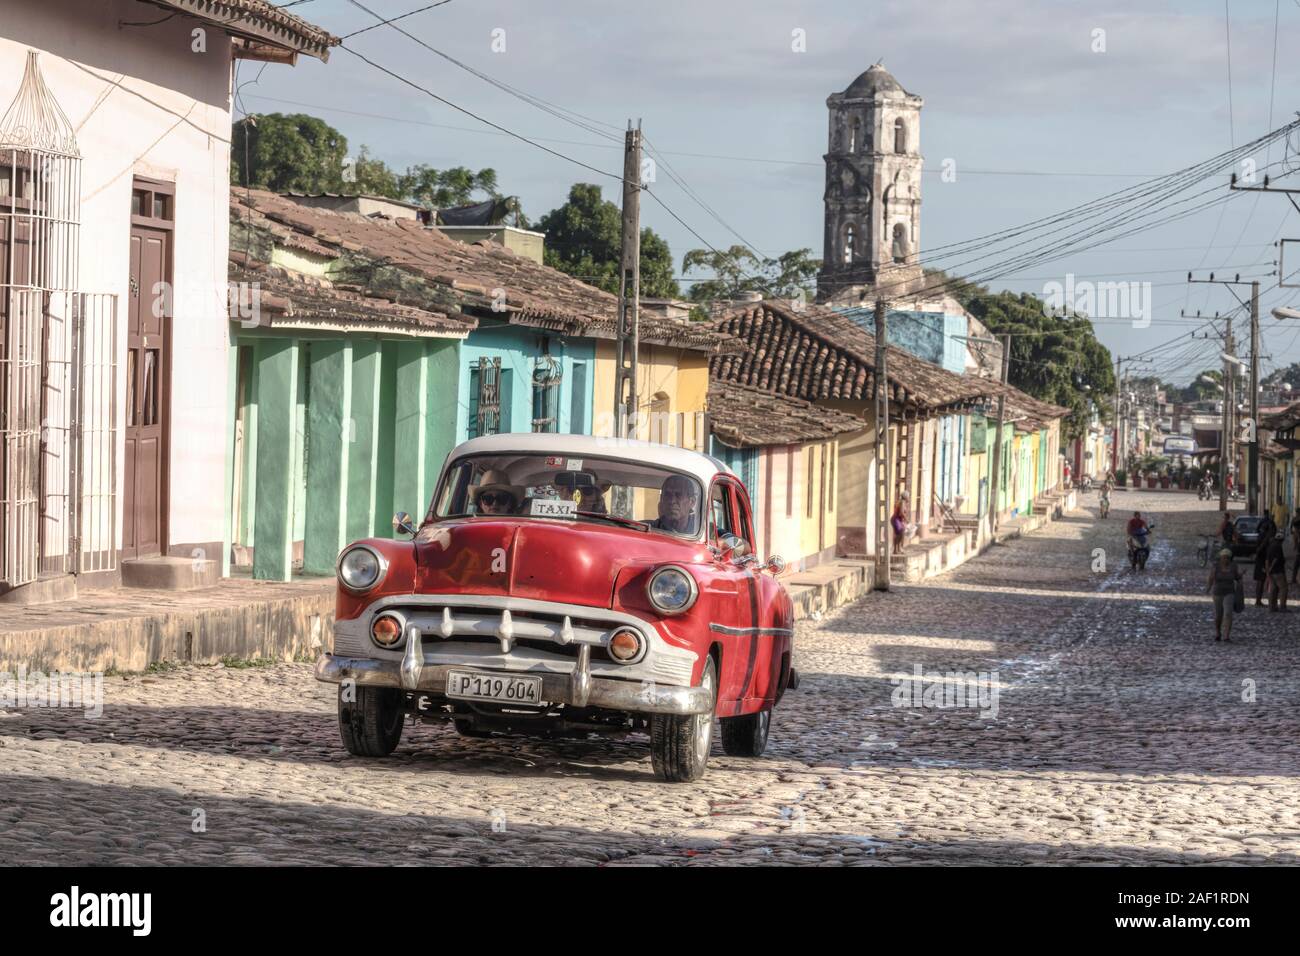 Trinidad, Sancti Spiritus, Cuba, North America Stock Photo